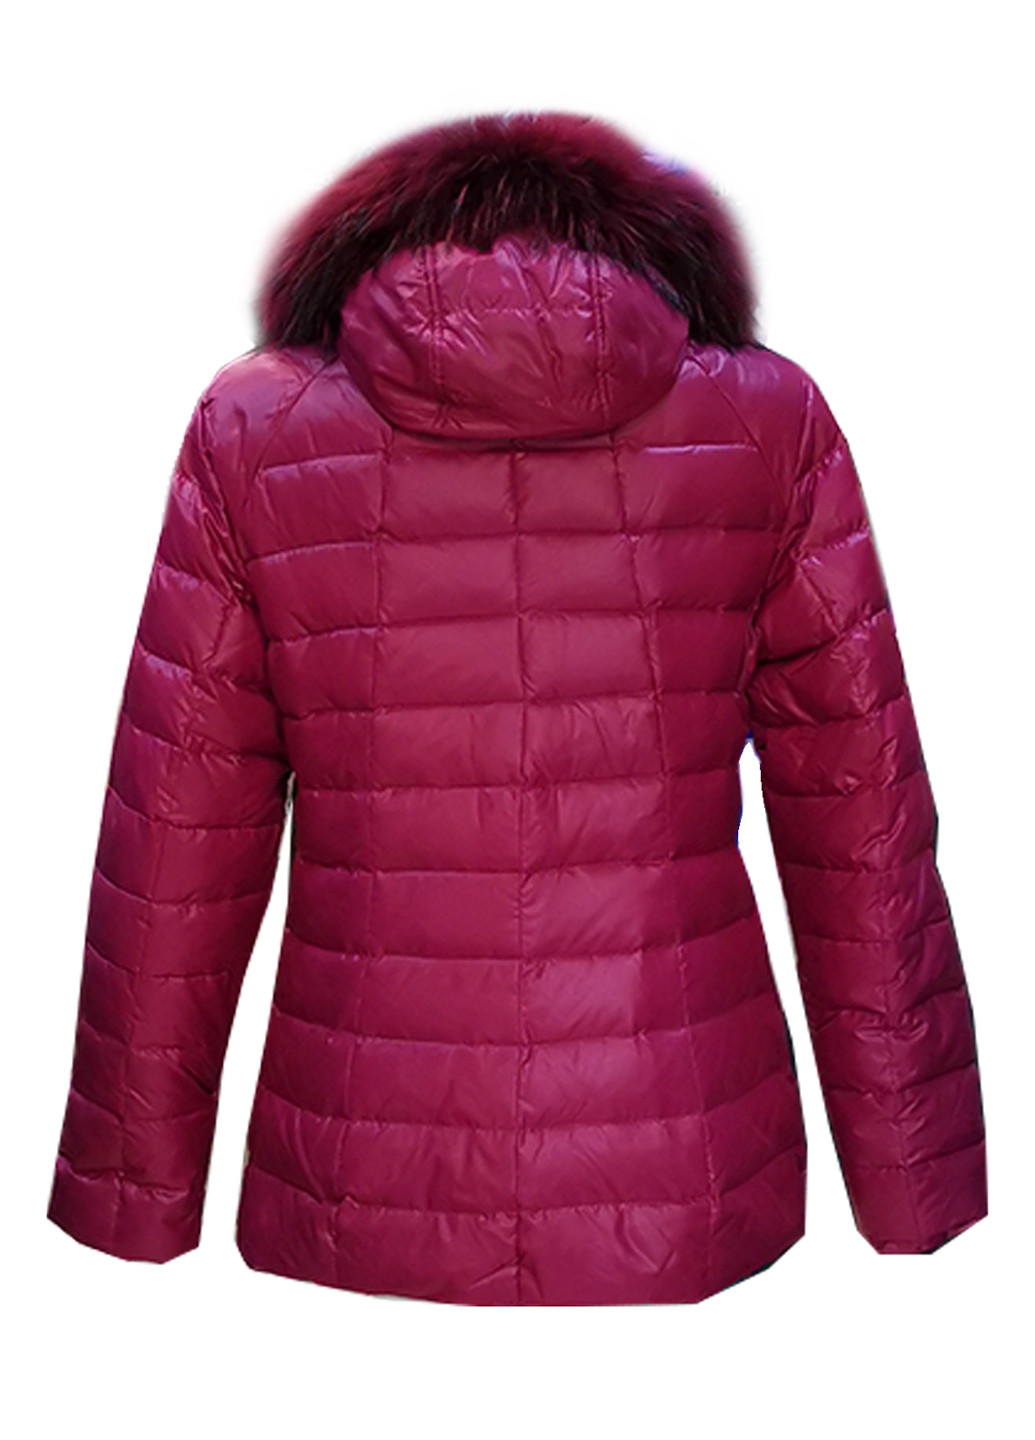 Фуксиновая зимняя куртка пуховик на натуральном пуху с капюшоном с натуральным мехом Mirage